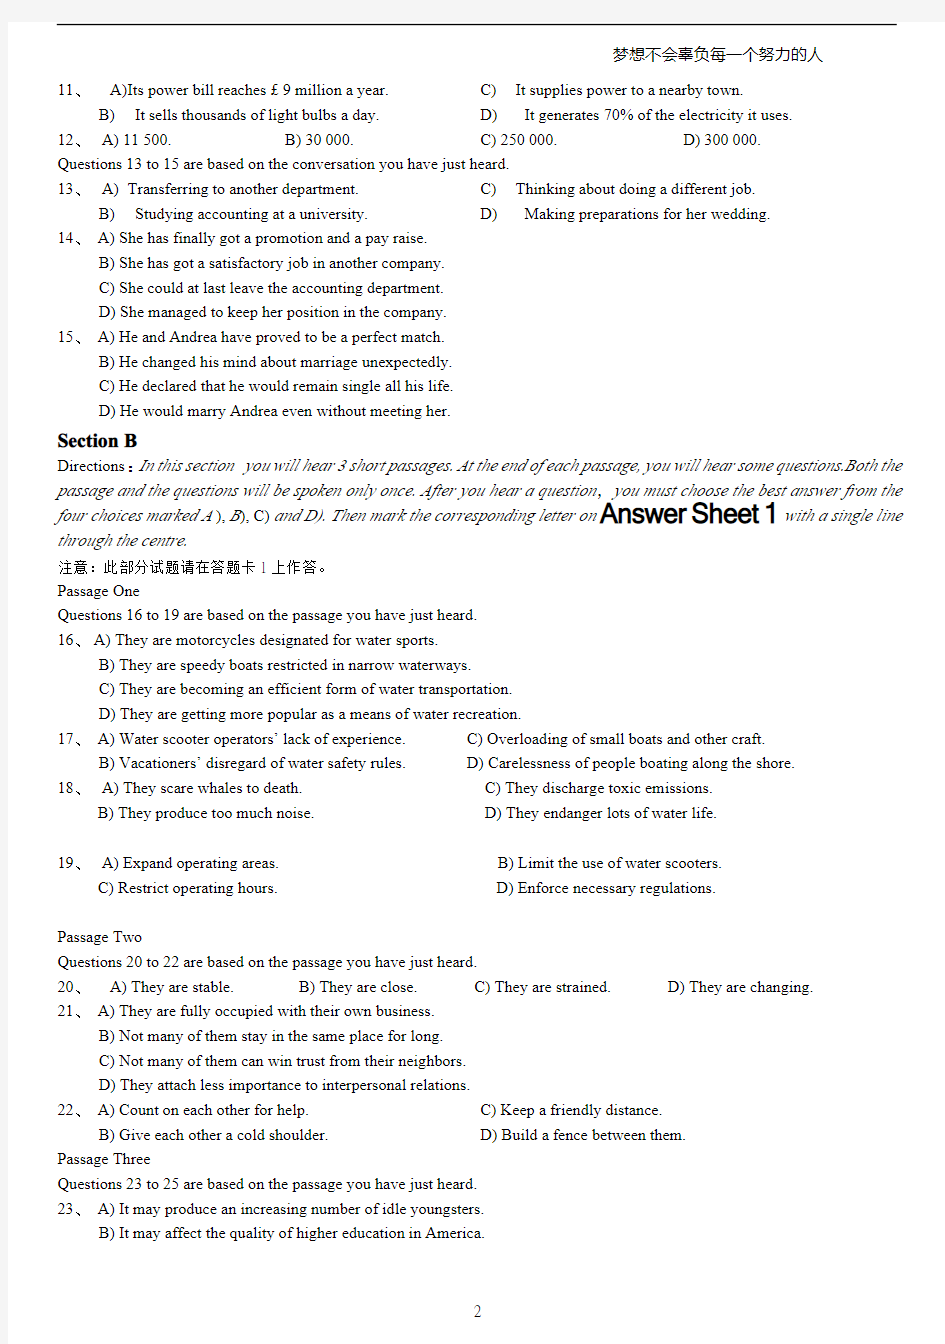 2015年6月大学英语六级考试真题(卷三)